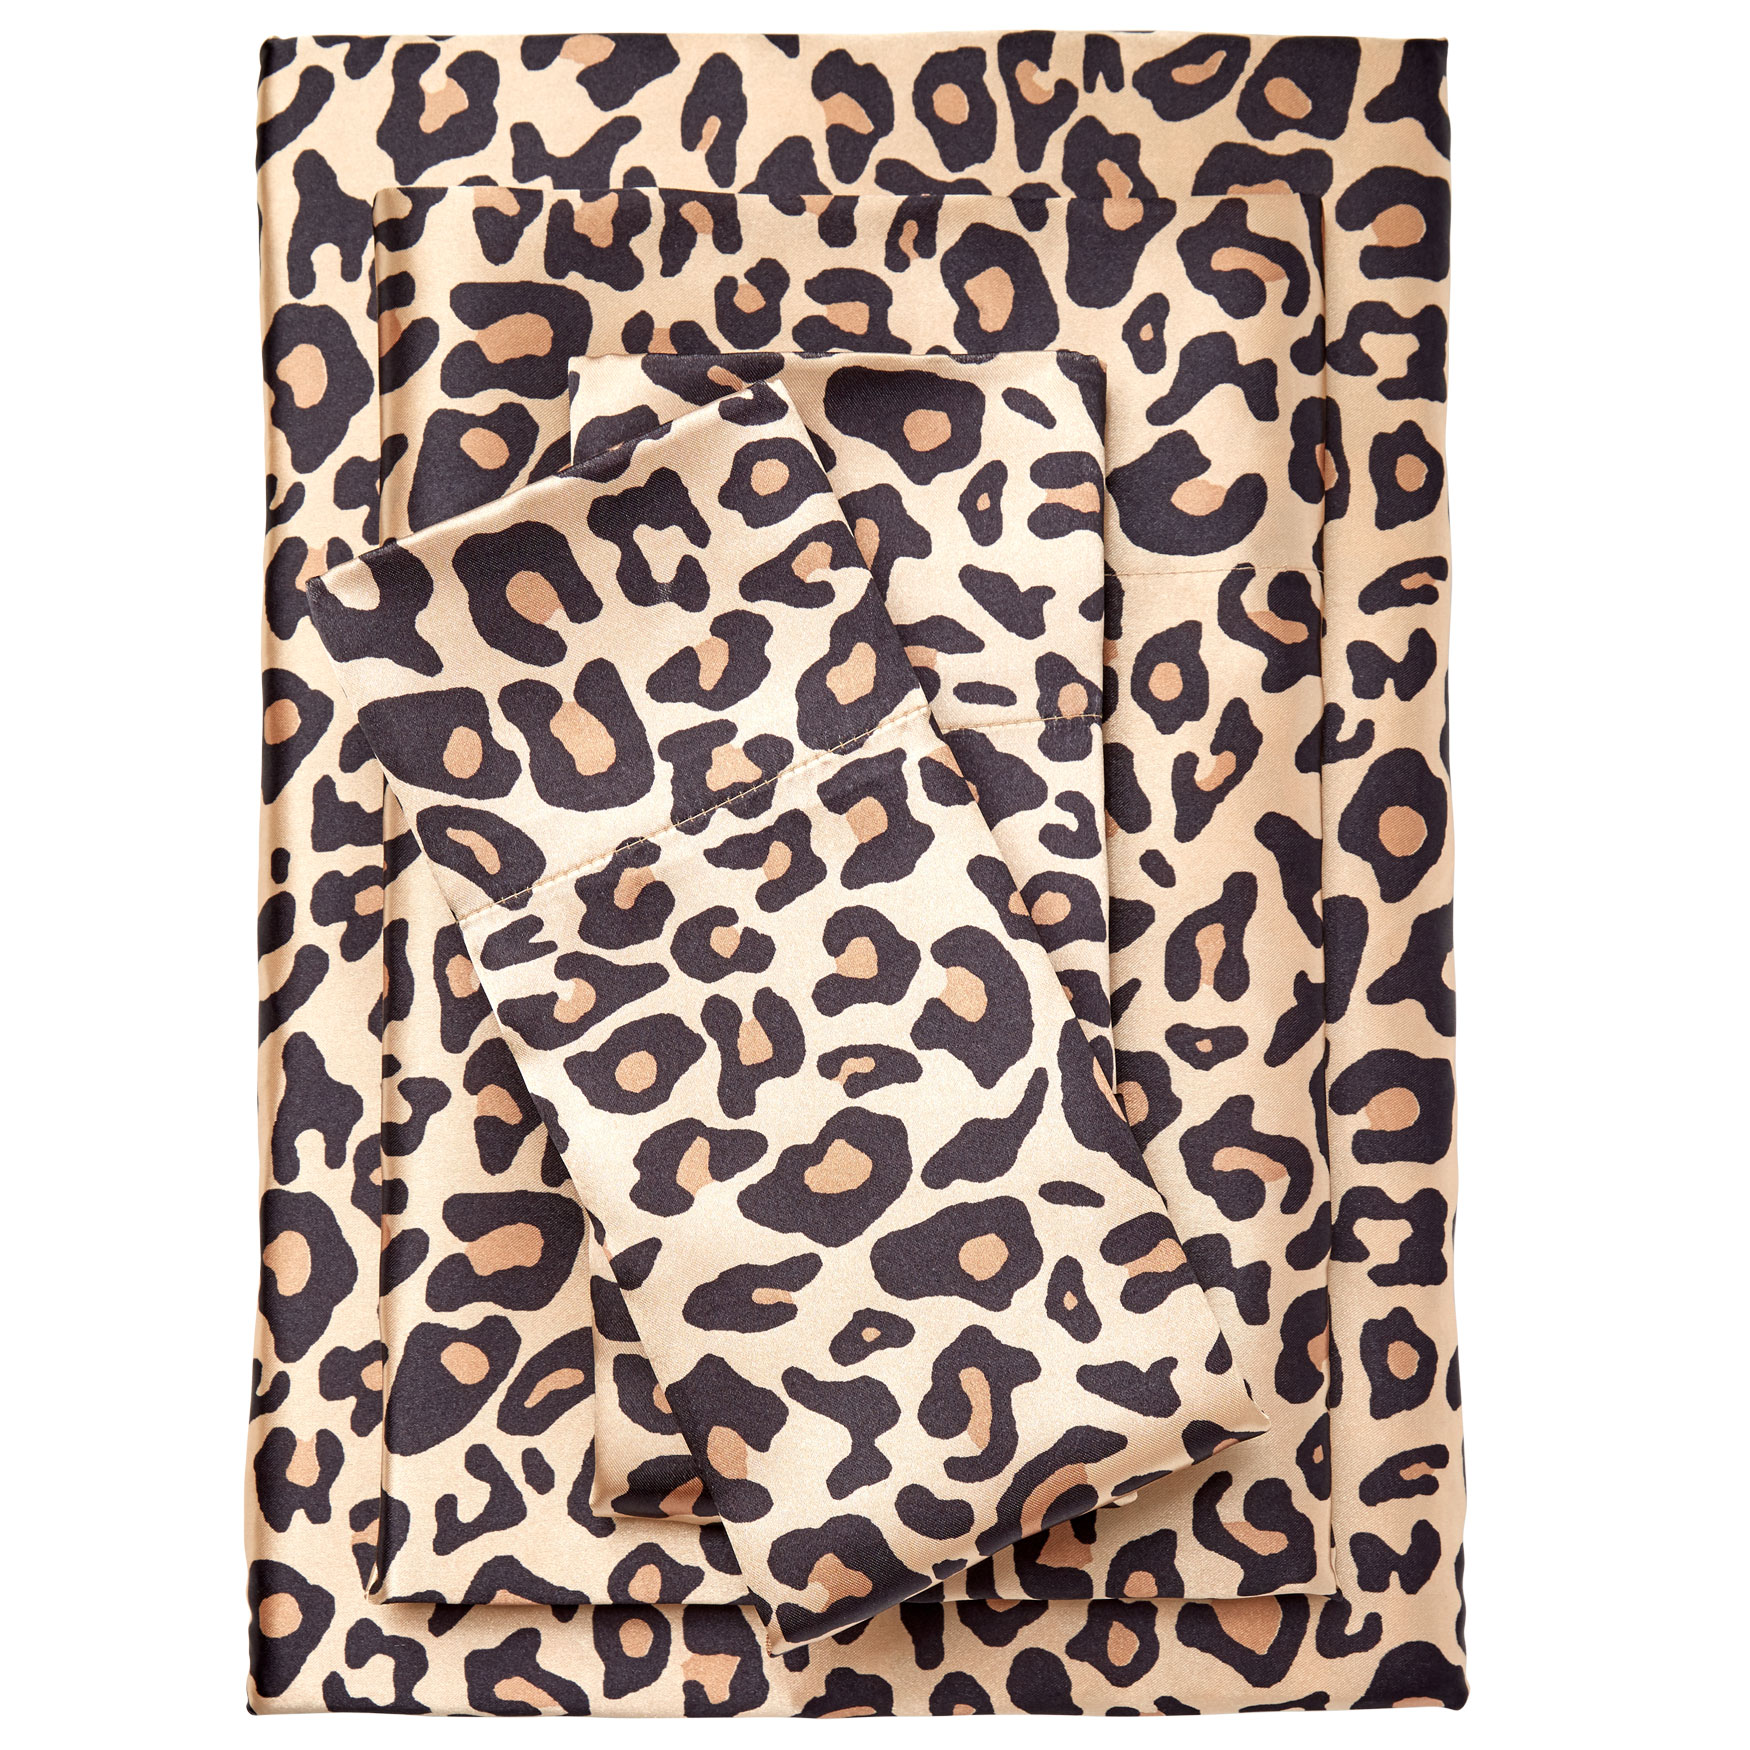 Satin Leopard Sheet Set| Bedding | Brylane Home